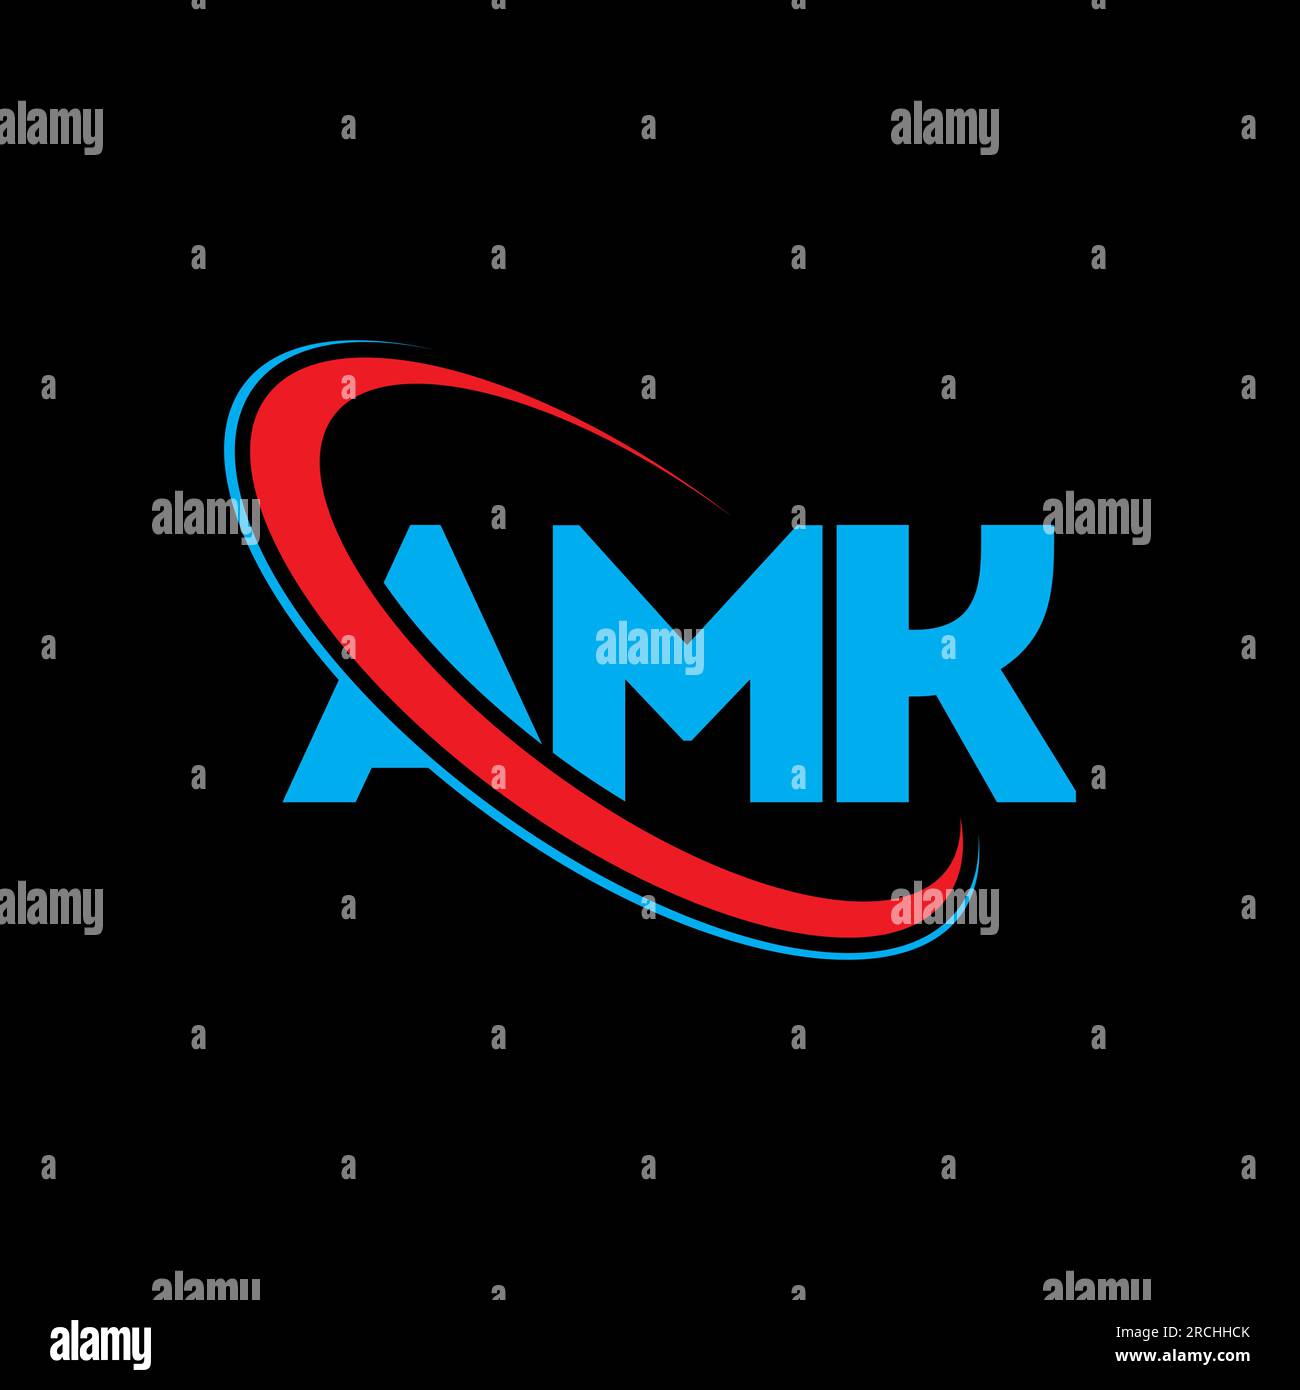 the AMK logo by AMKitsune on DeviantArt